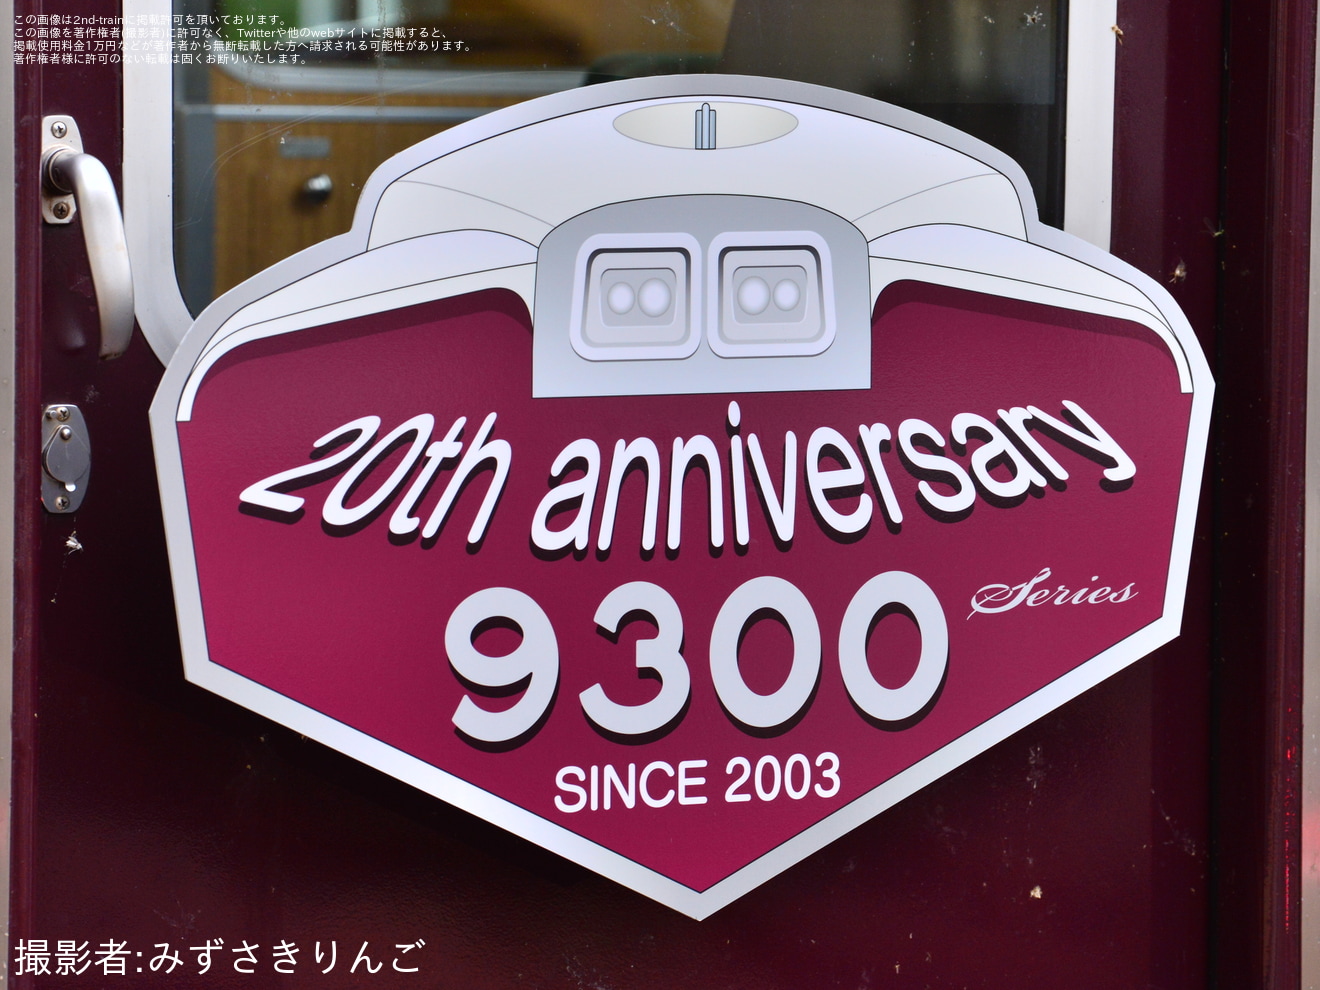 【阪急】9300系誕生20周年記念列車(9300×8R(9300F)) 運行開始の拡大写真